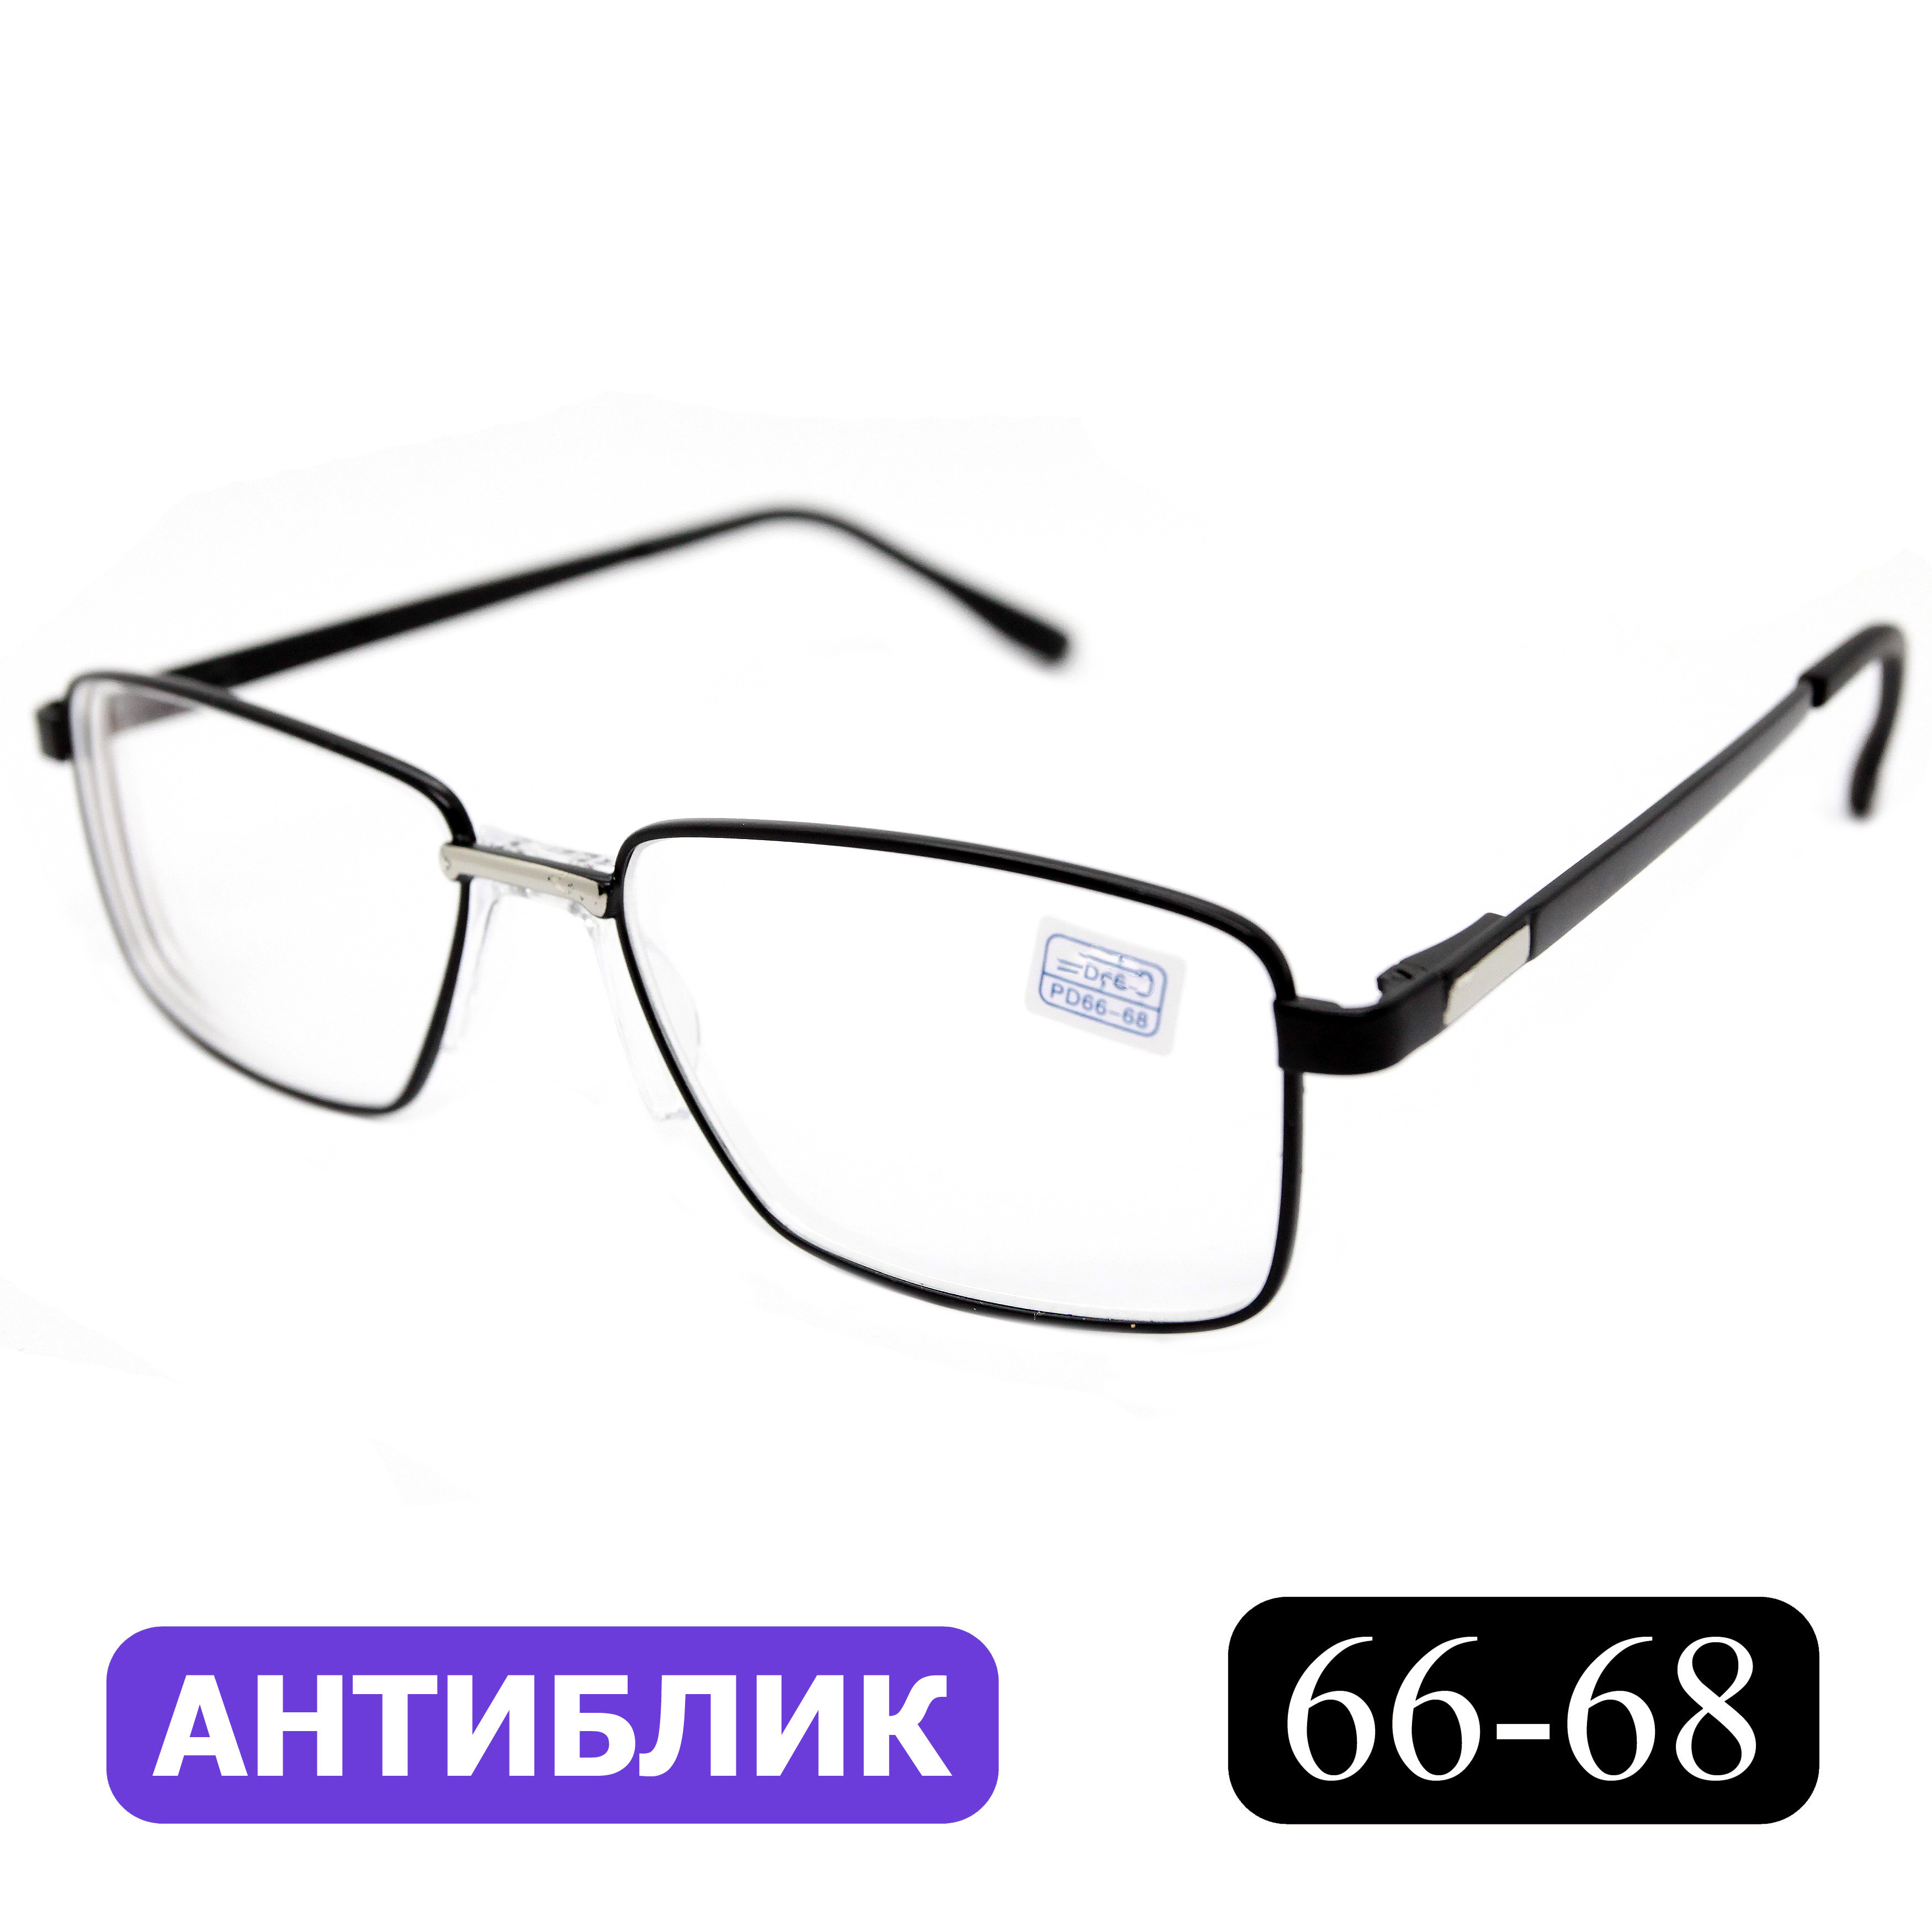 Готовые очки Favarit 7705 +3,25, без футляра, с антибликом, черный, РЦ 66-68